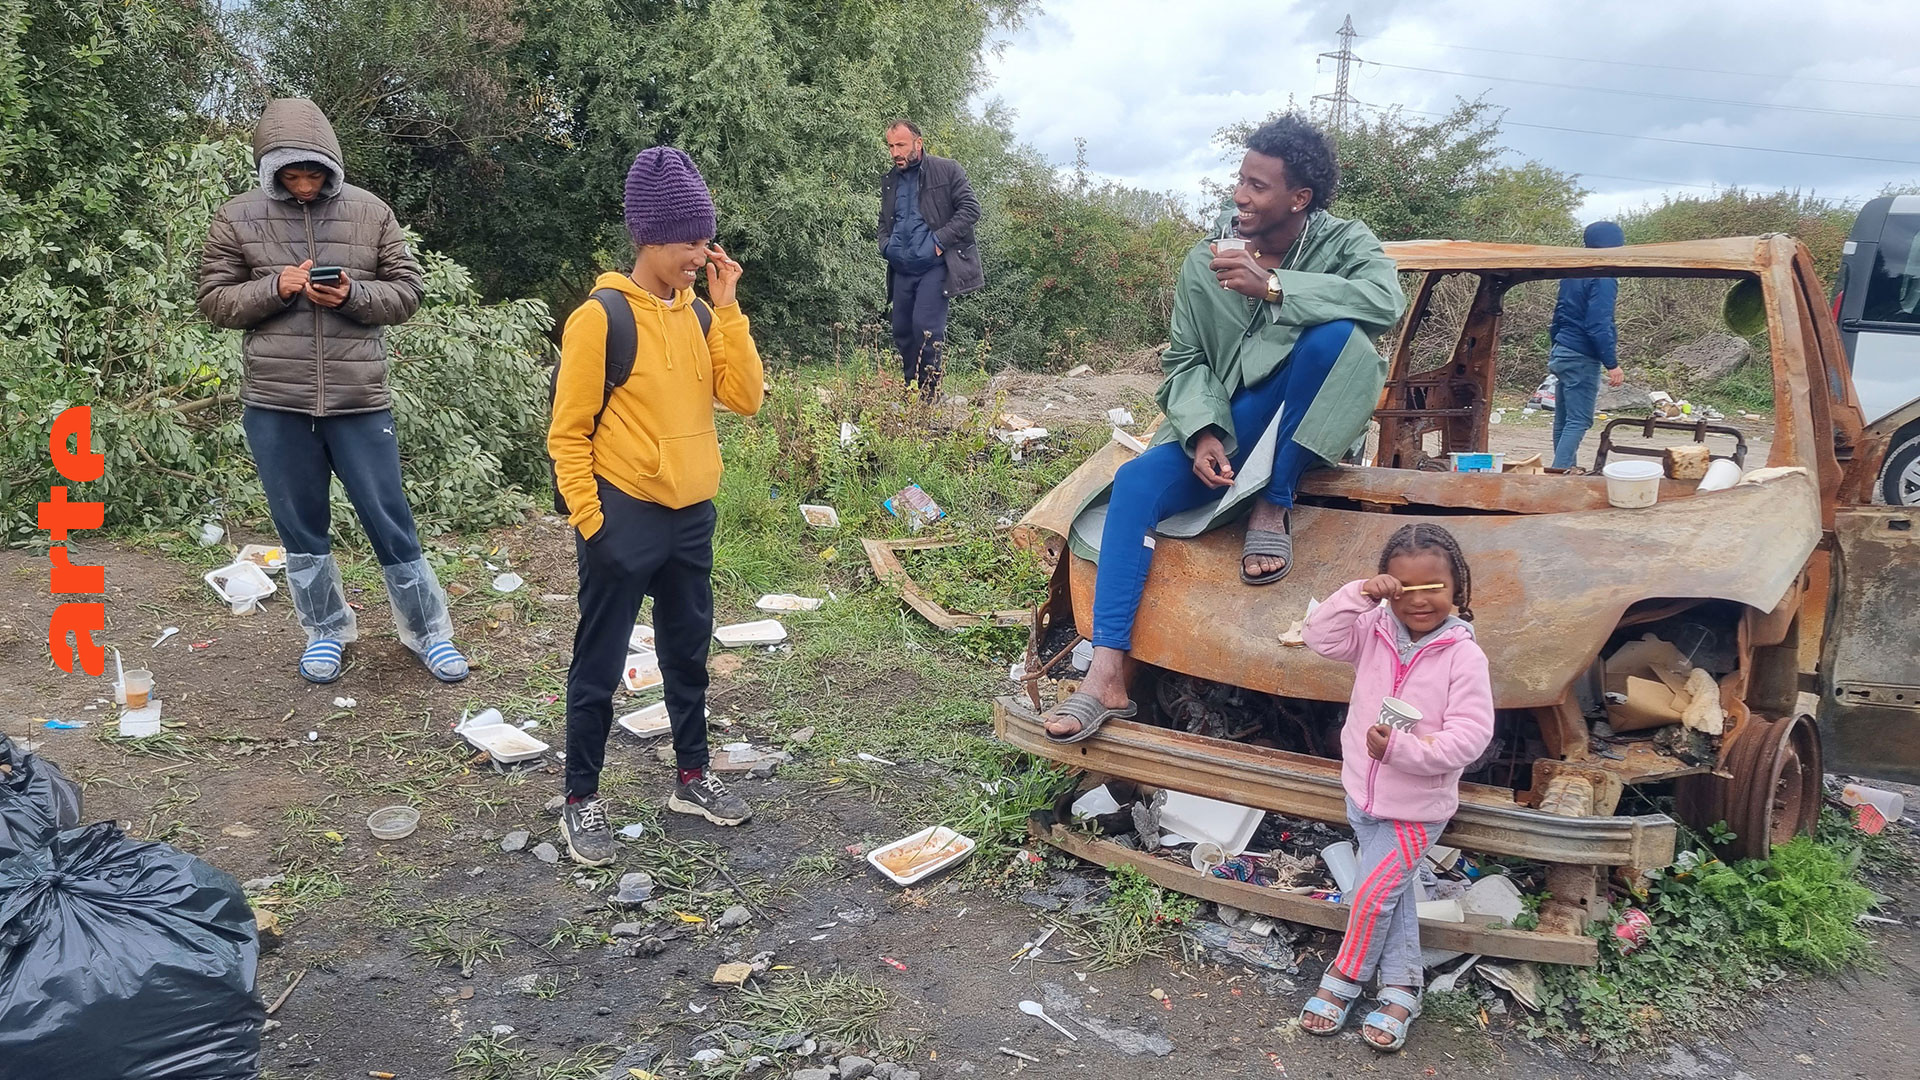 Frankreich: Die Kinder von Calais